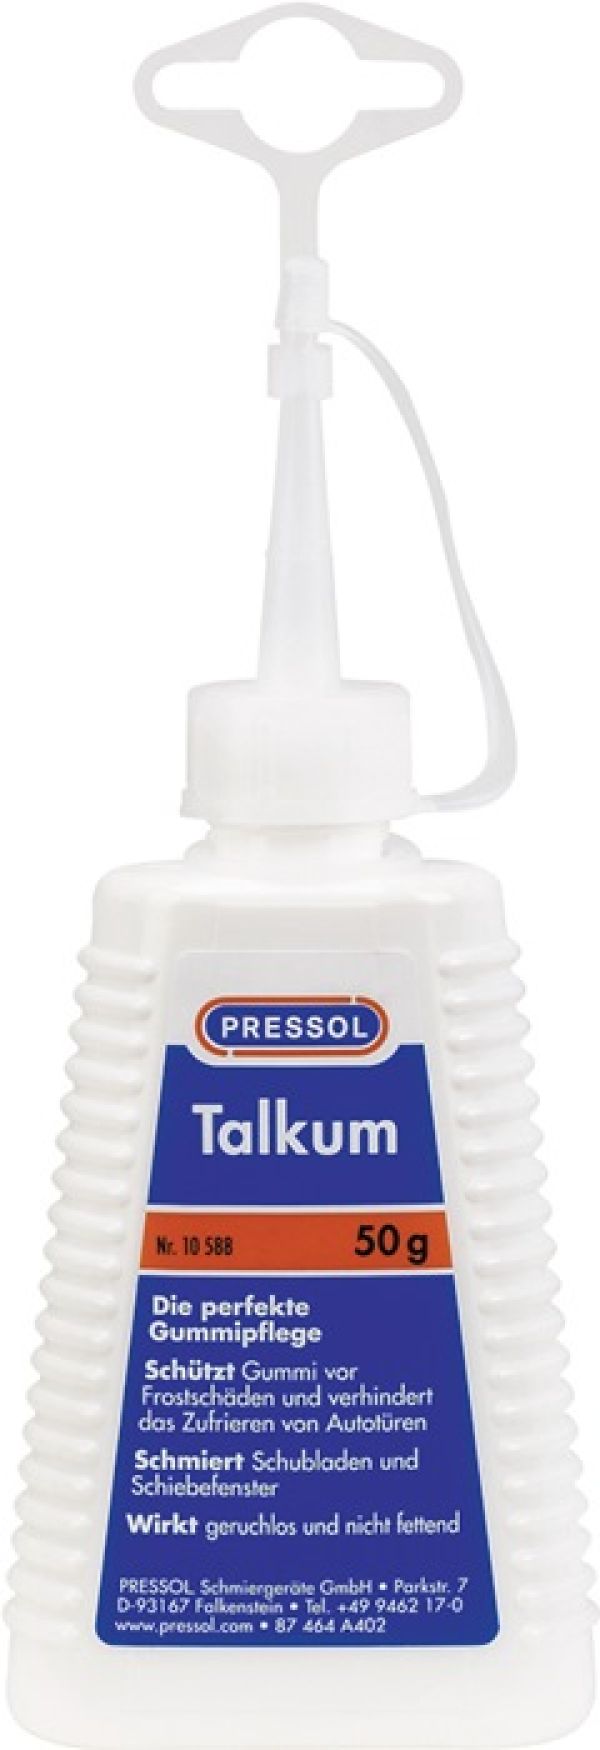 Talkum 50g Spritzkännchen PRESSOL